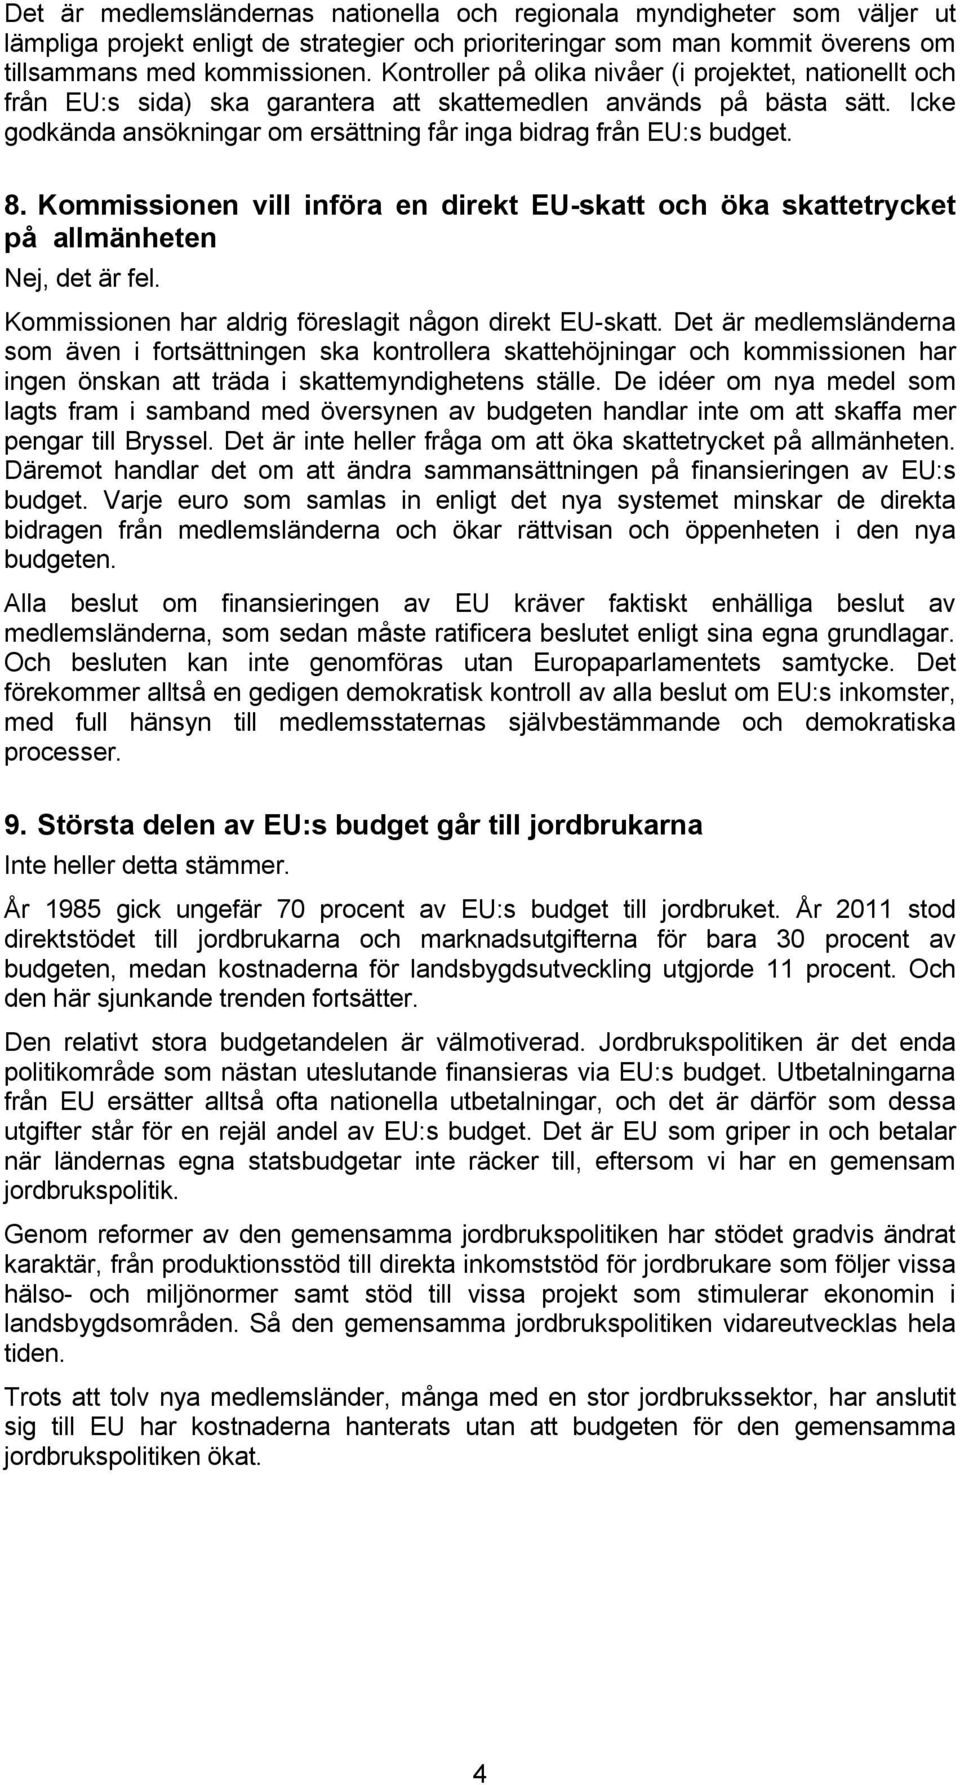 8. Kommissionen vill införa en direkt EU-skatt och öka skattetrycket på allmänheten Nej, det är fel. Kommissionen har aldrig föreslagit någon direkt EU-skatt.